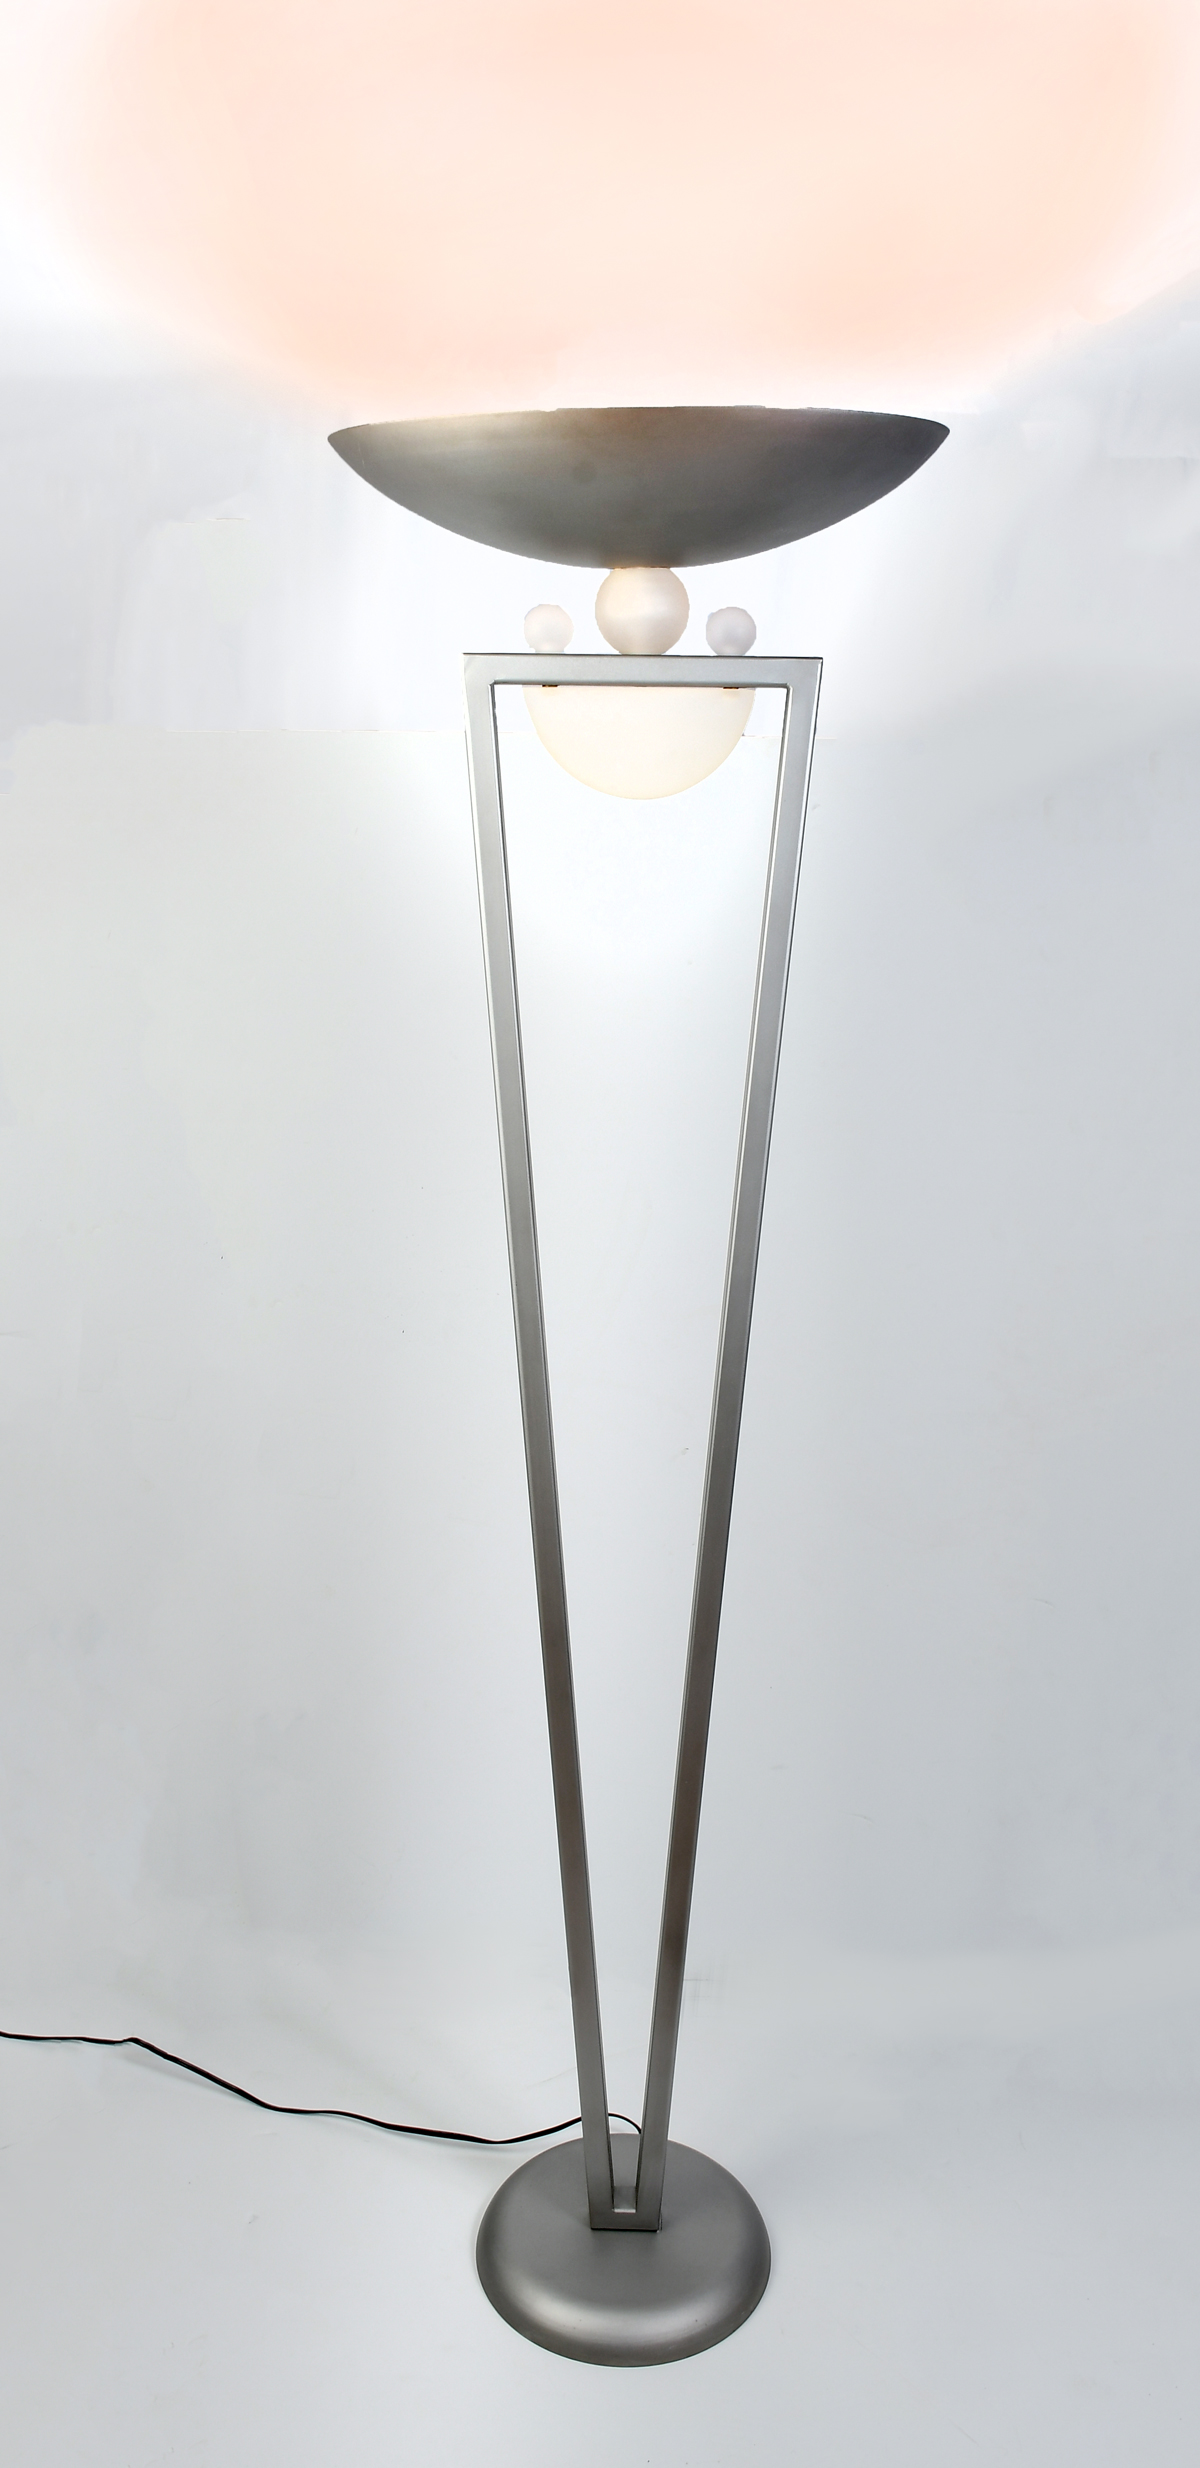 CONTEMPORARY FLOOR LAMP: Grey metal,